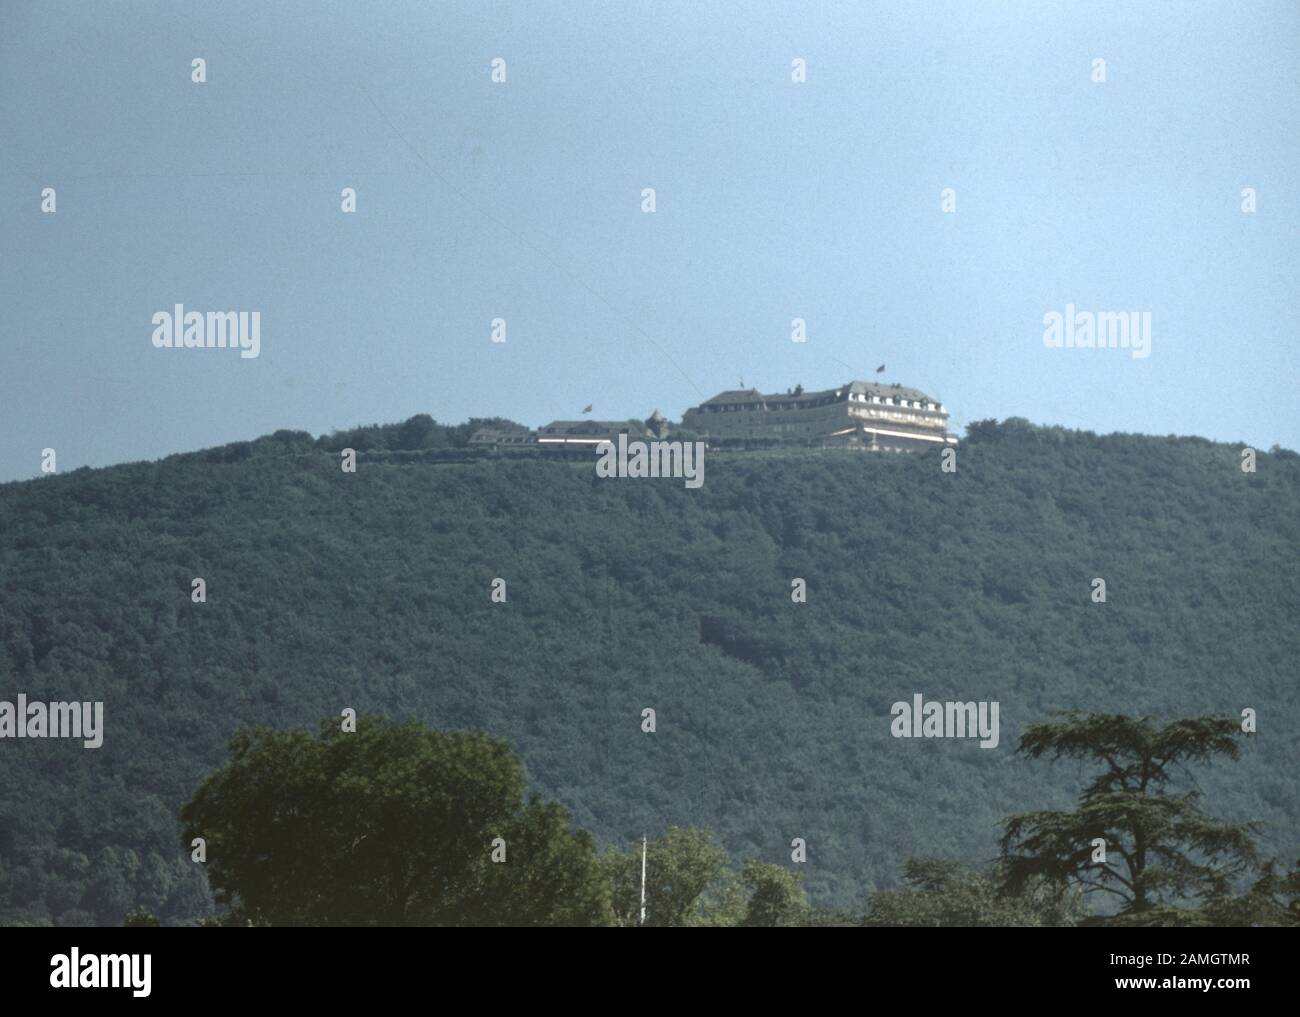 Nakuläres Foto, aufgenommen auf einer analogen 35-mm-Filmtransparenz, glaubte, weißes Gebäude auf dem Berg, 1965, abzubilden. Zu den wichtigsten Themen/Objekten gehören Himmel, Hügel, Meer, Berg, Natur und graue Farbe. () Stockfoto